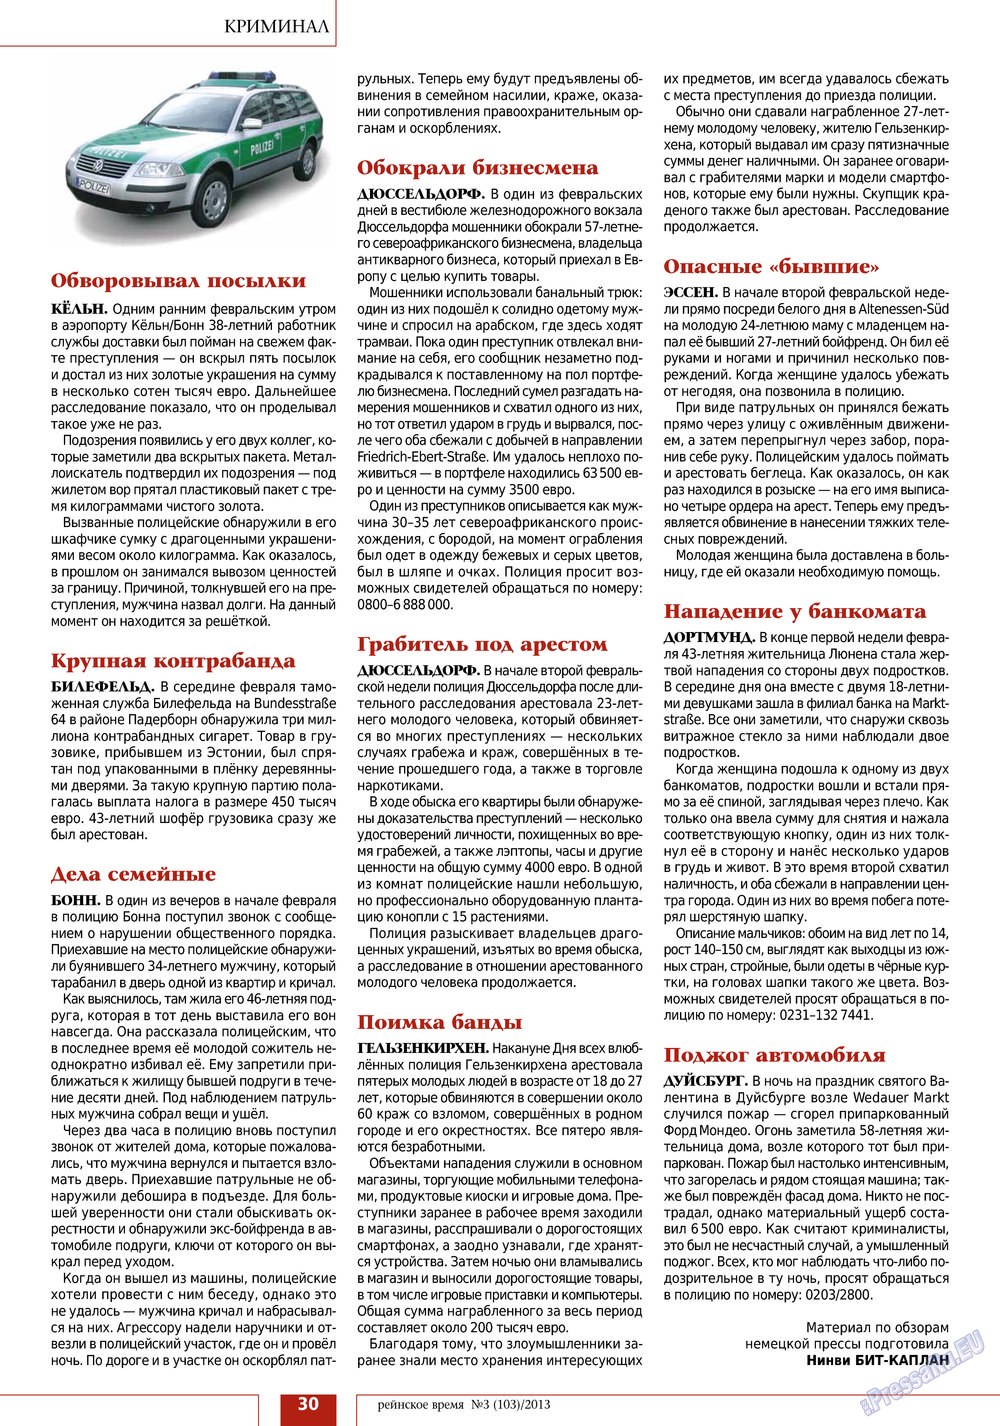 Рейнское время, журнал. 2013 №3 стр.30